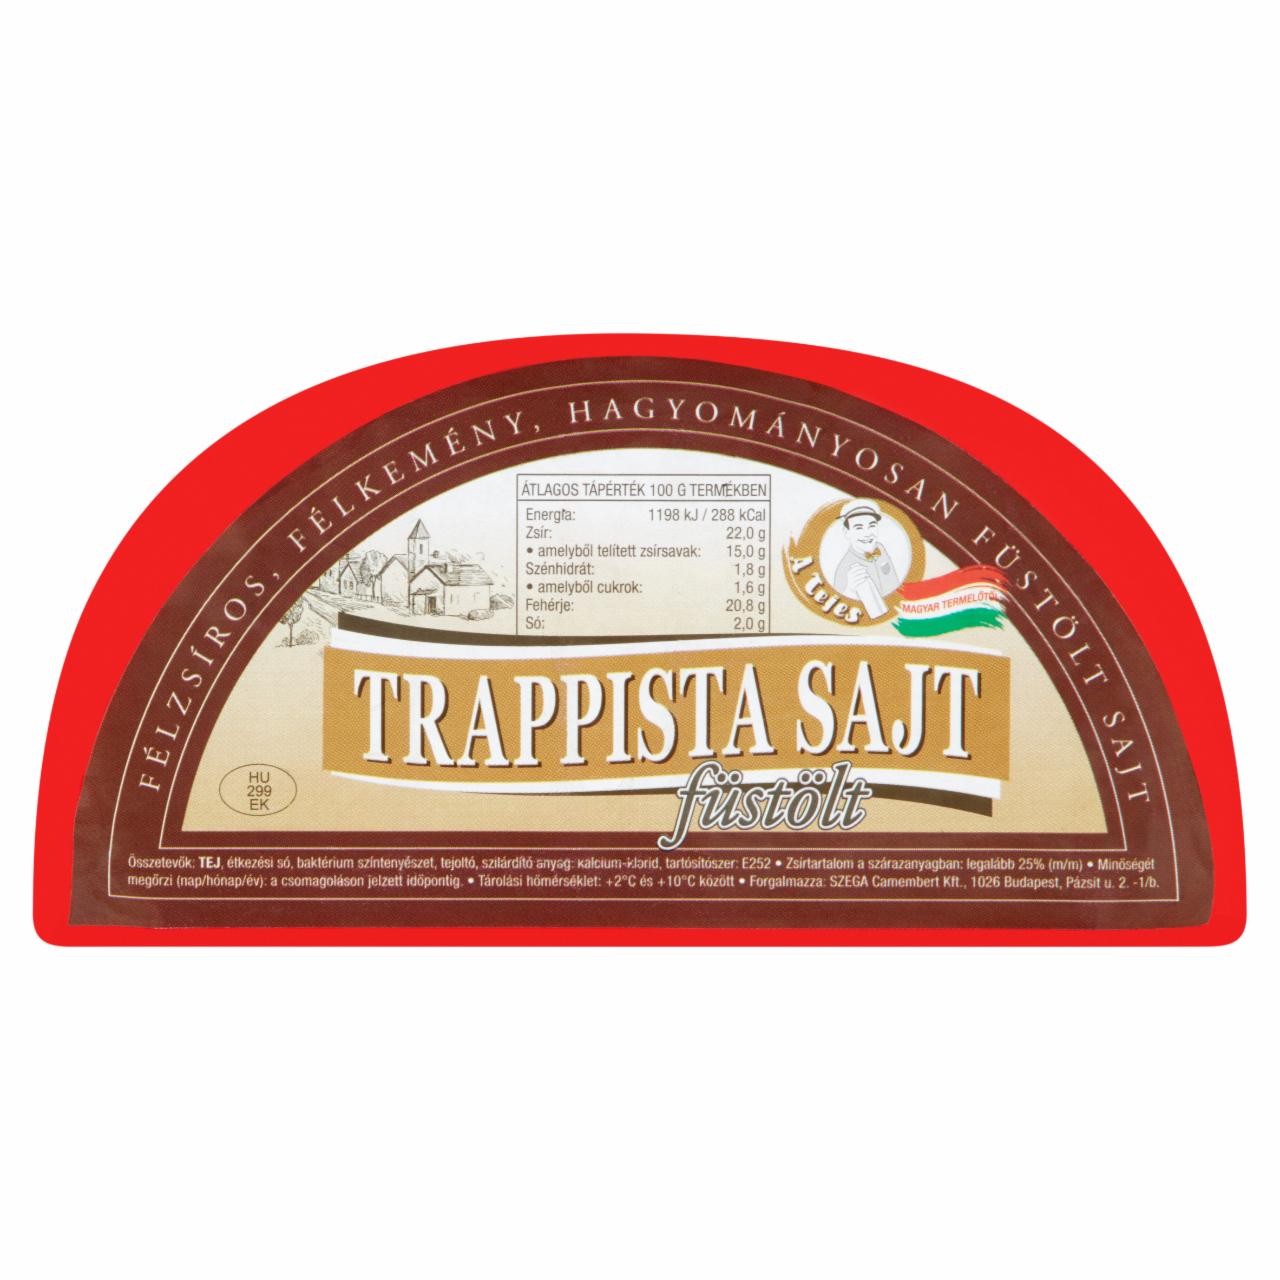 Képek - A Tejes füstölt, felezett, zsíros félkemény trappista sajt